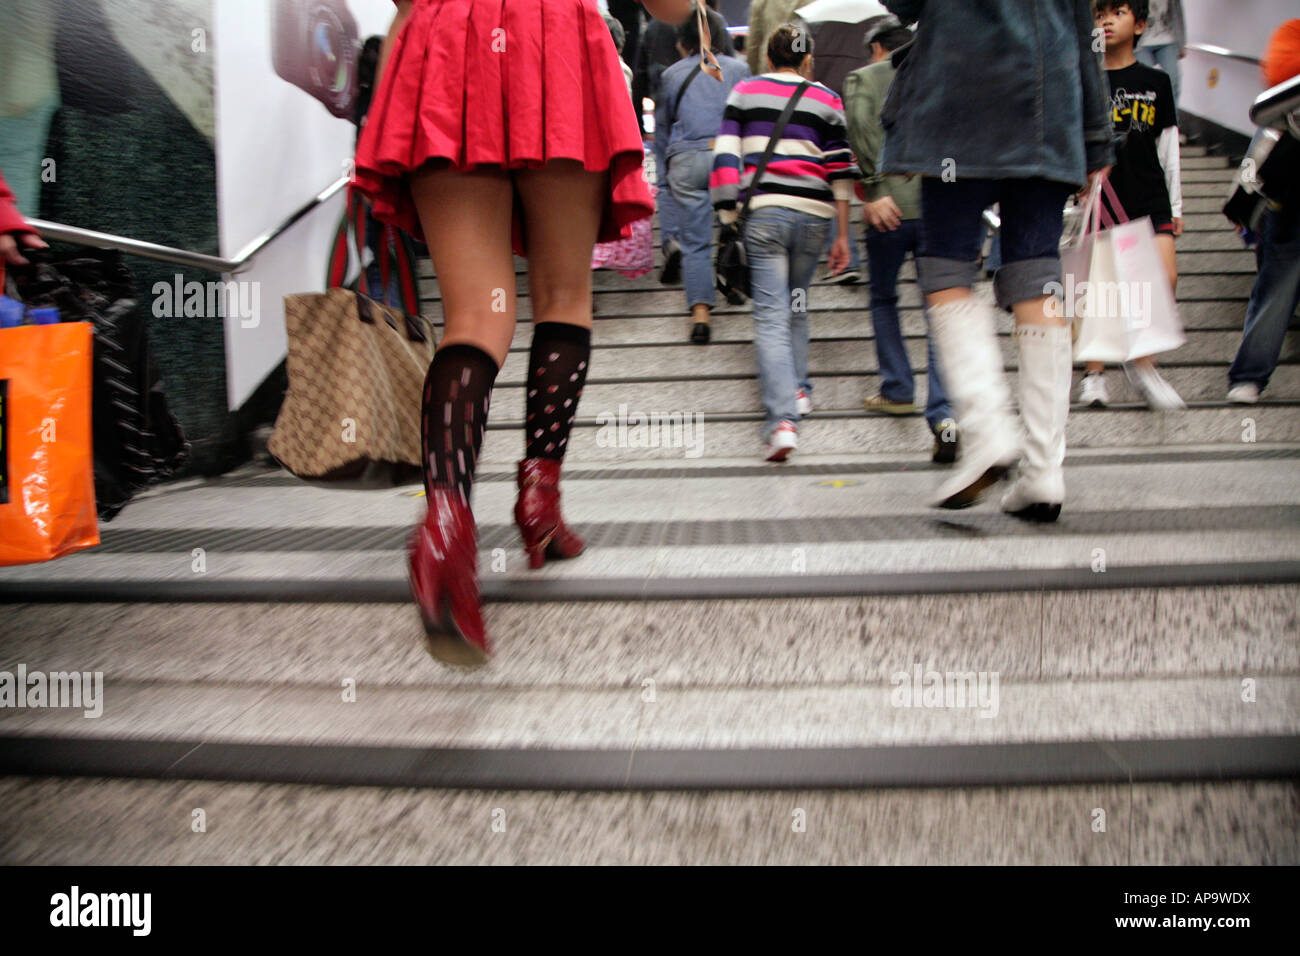 Jupe courte fille portant des mesures de marche d'une station de métro  Photo Stock - Alamy